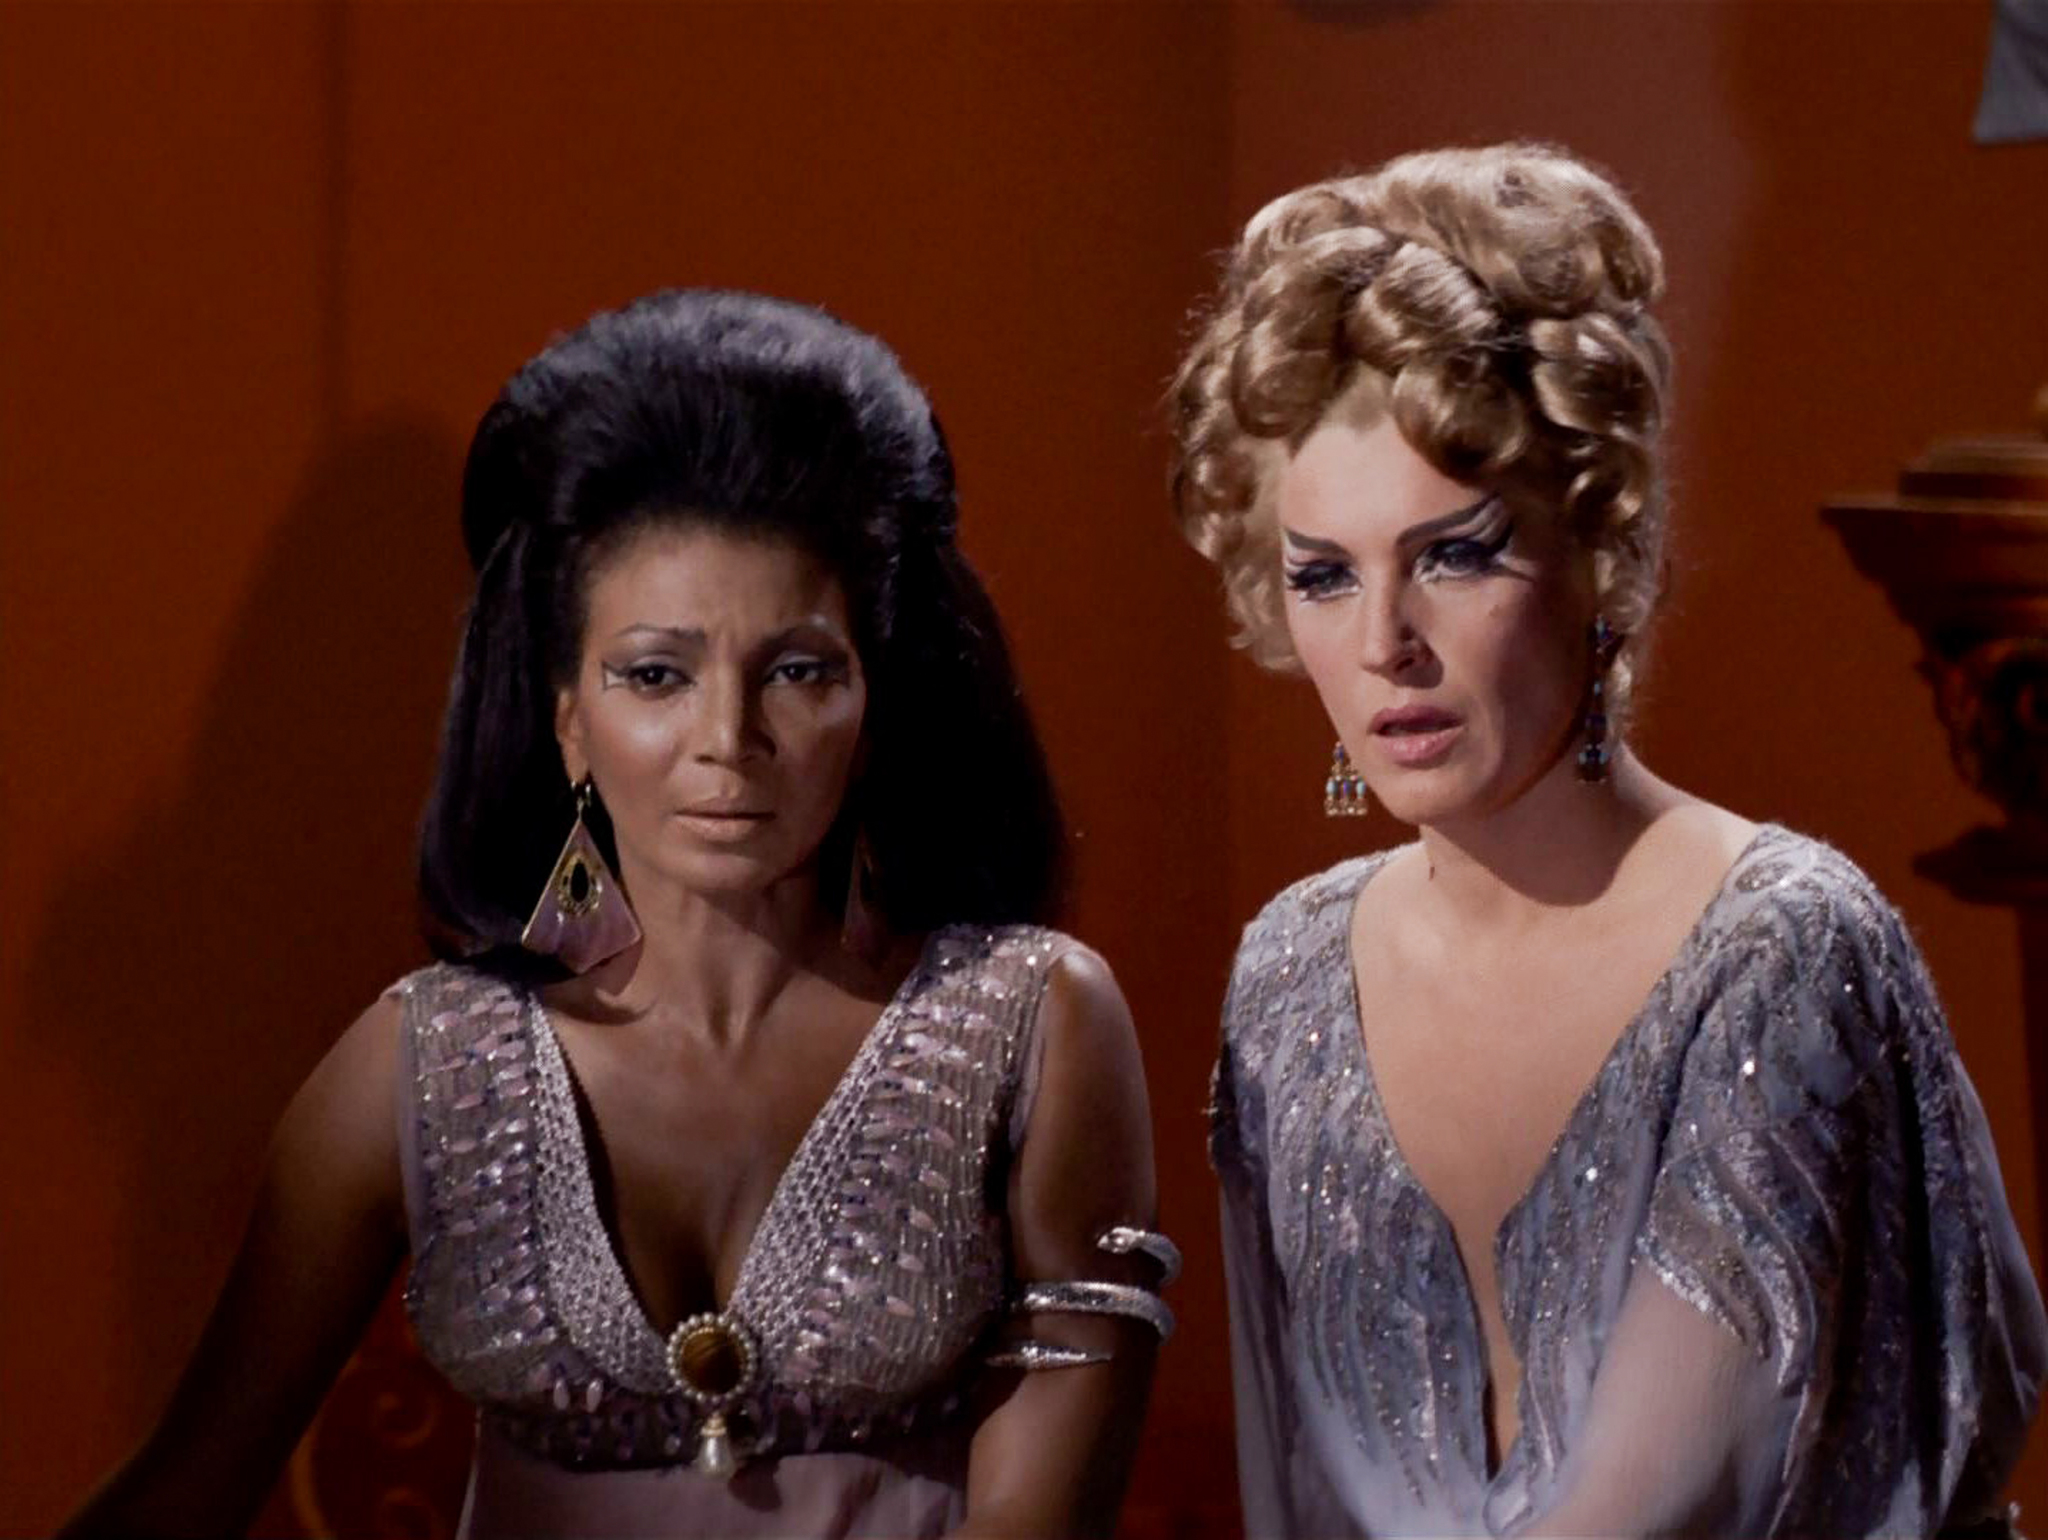 Still of Majel Barrett and Nichelle Nichols in Star Trek (1966)